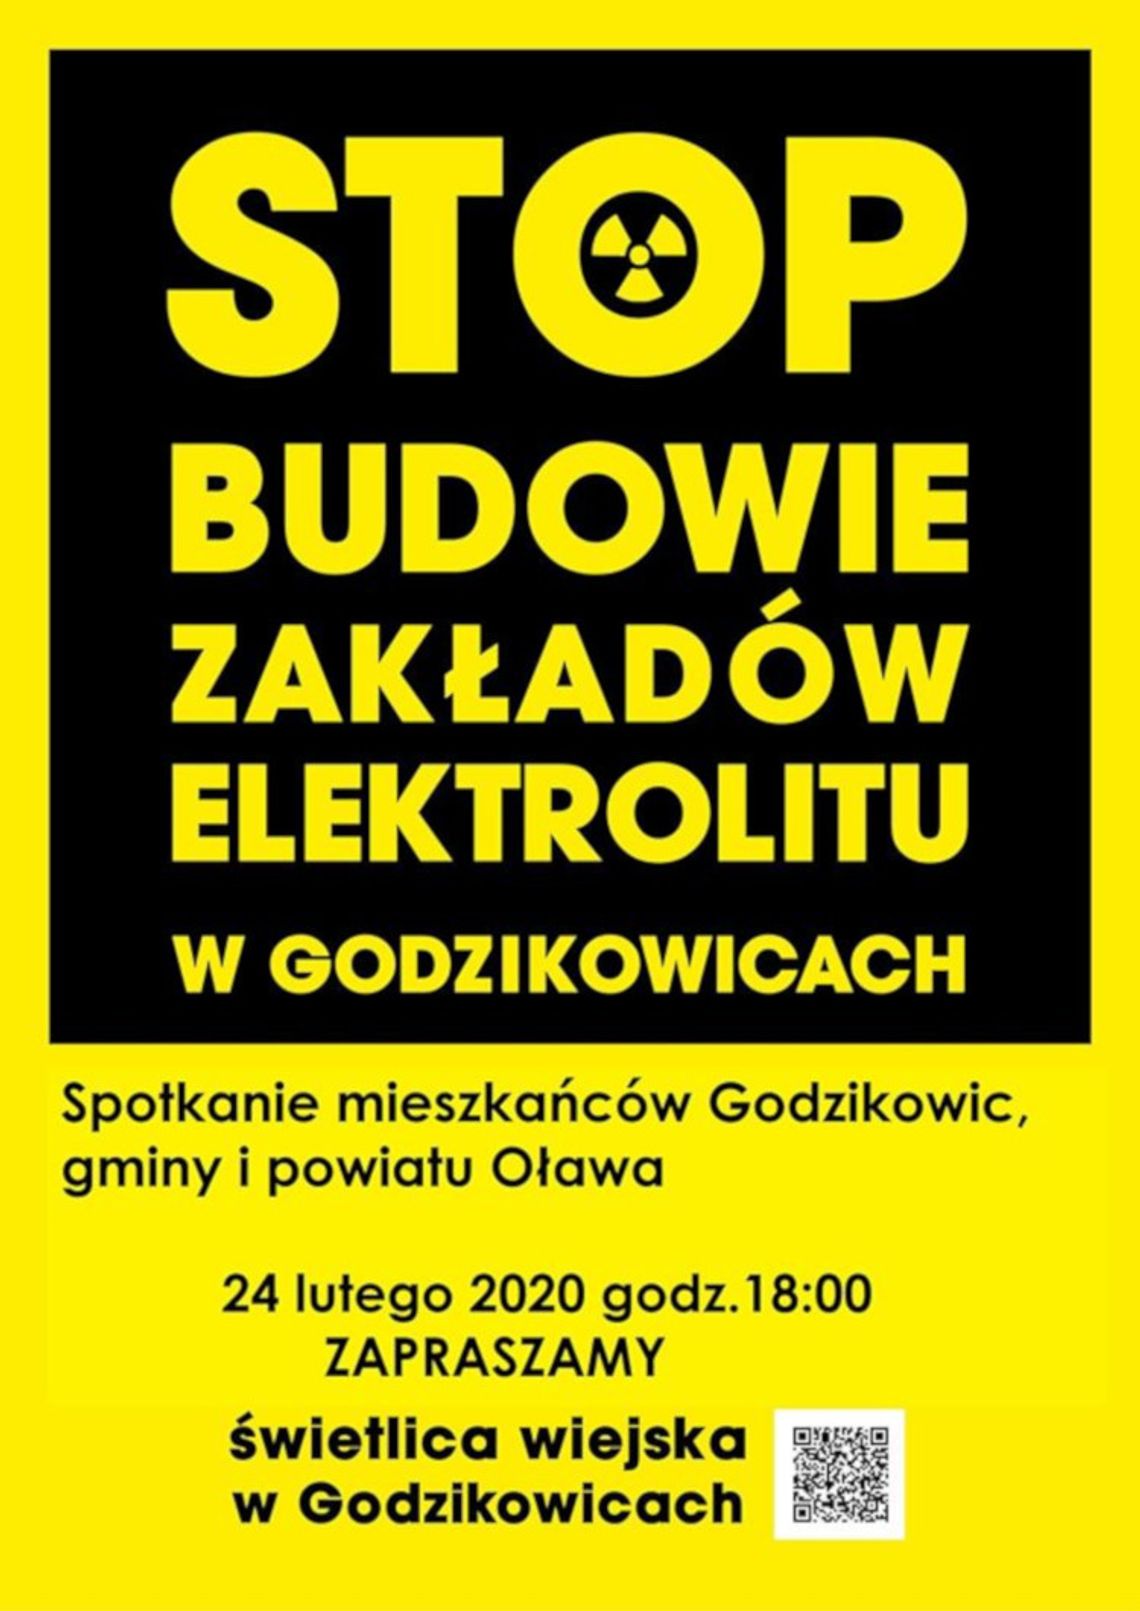 STOP budowie zakładów elektroloitu w Godzikowicach